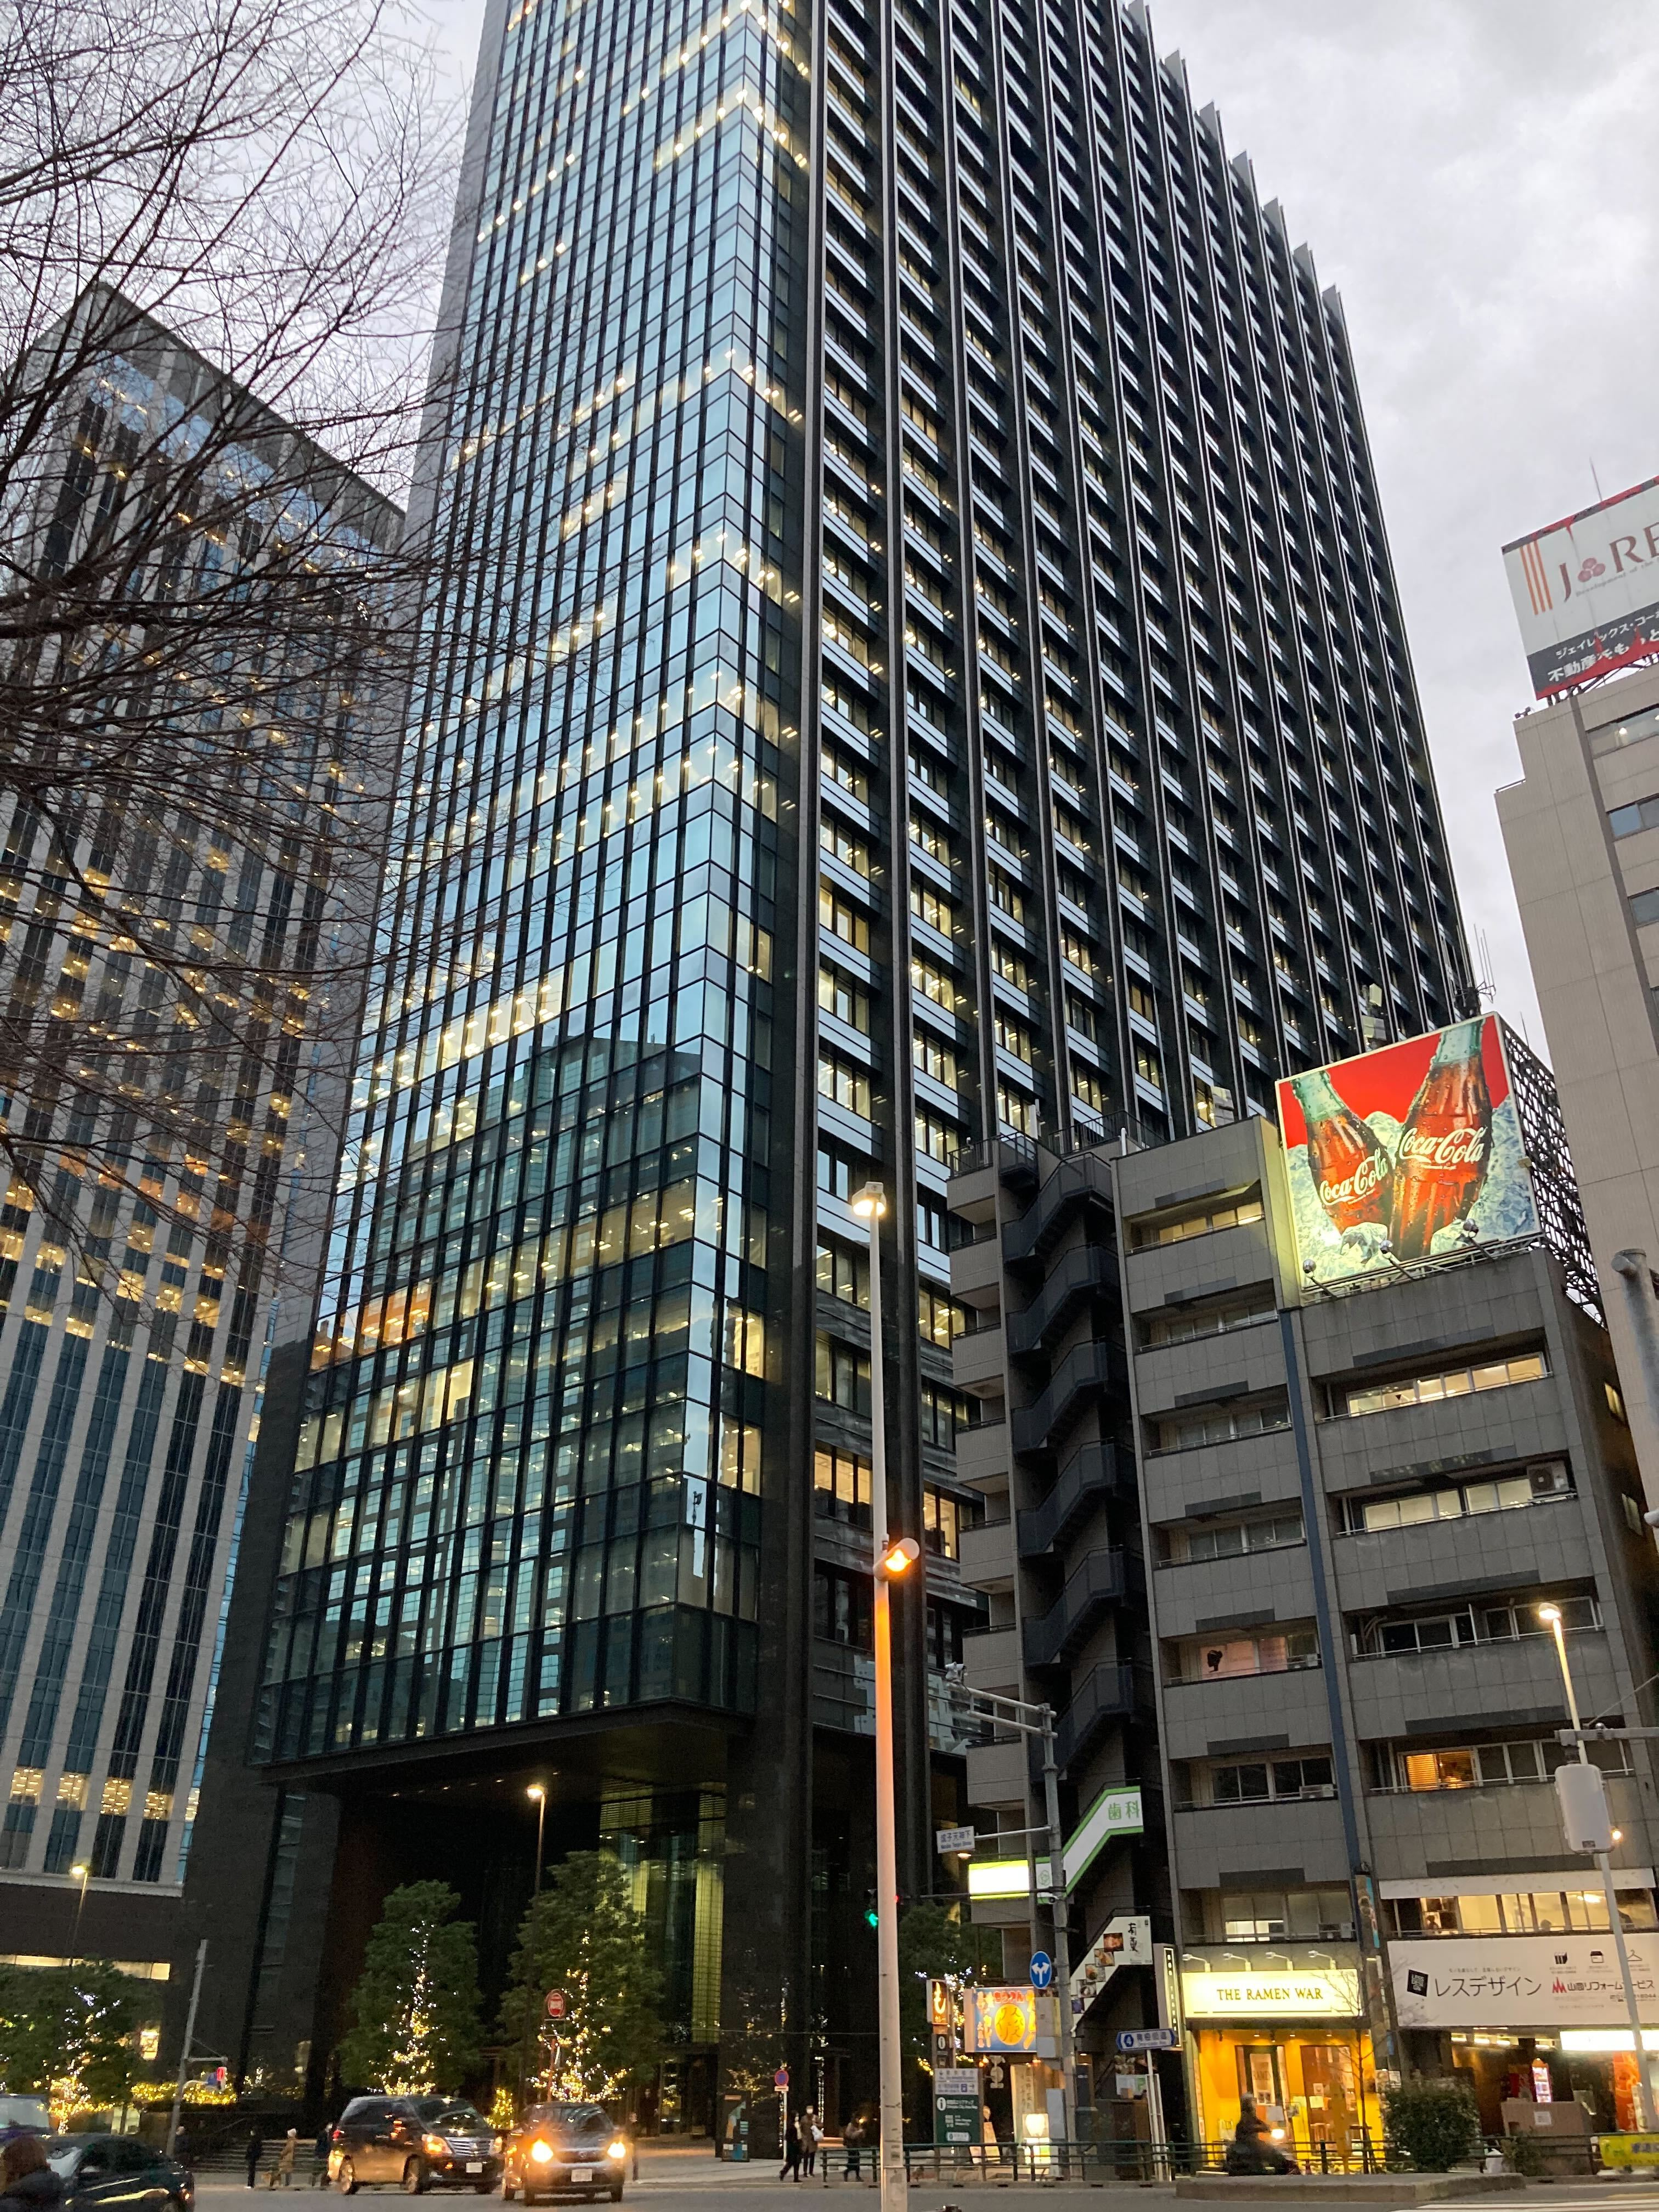 ミロゴス株式会社はセプテーニ・グループのグループ会社です。
オフィスは西新宿駅から徒歩3分の場所にありあす。